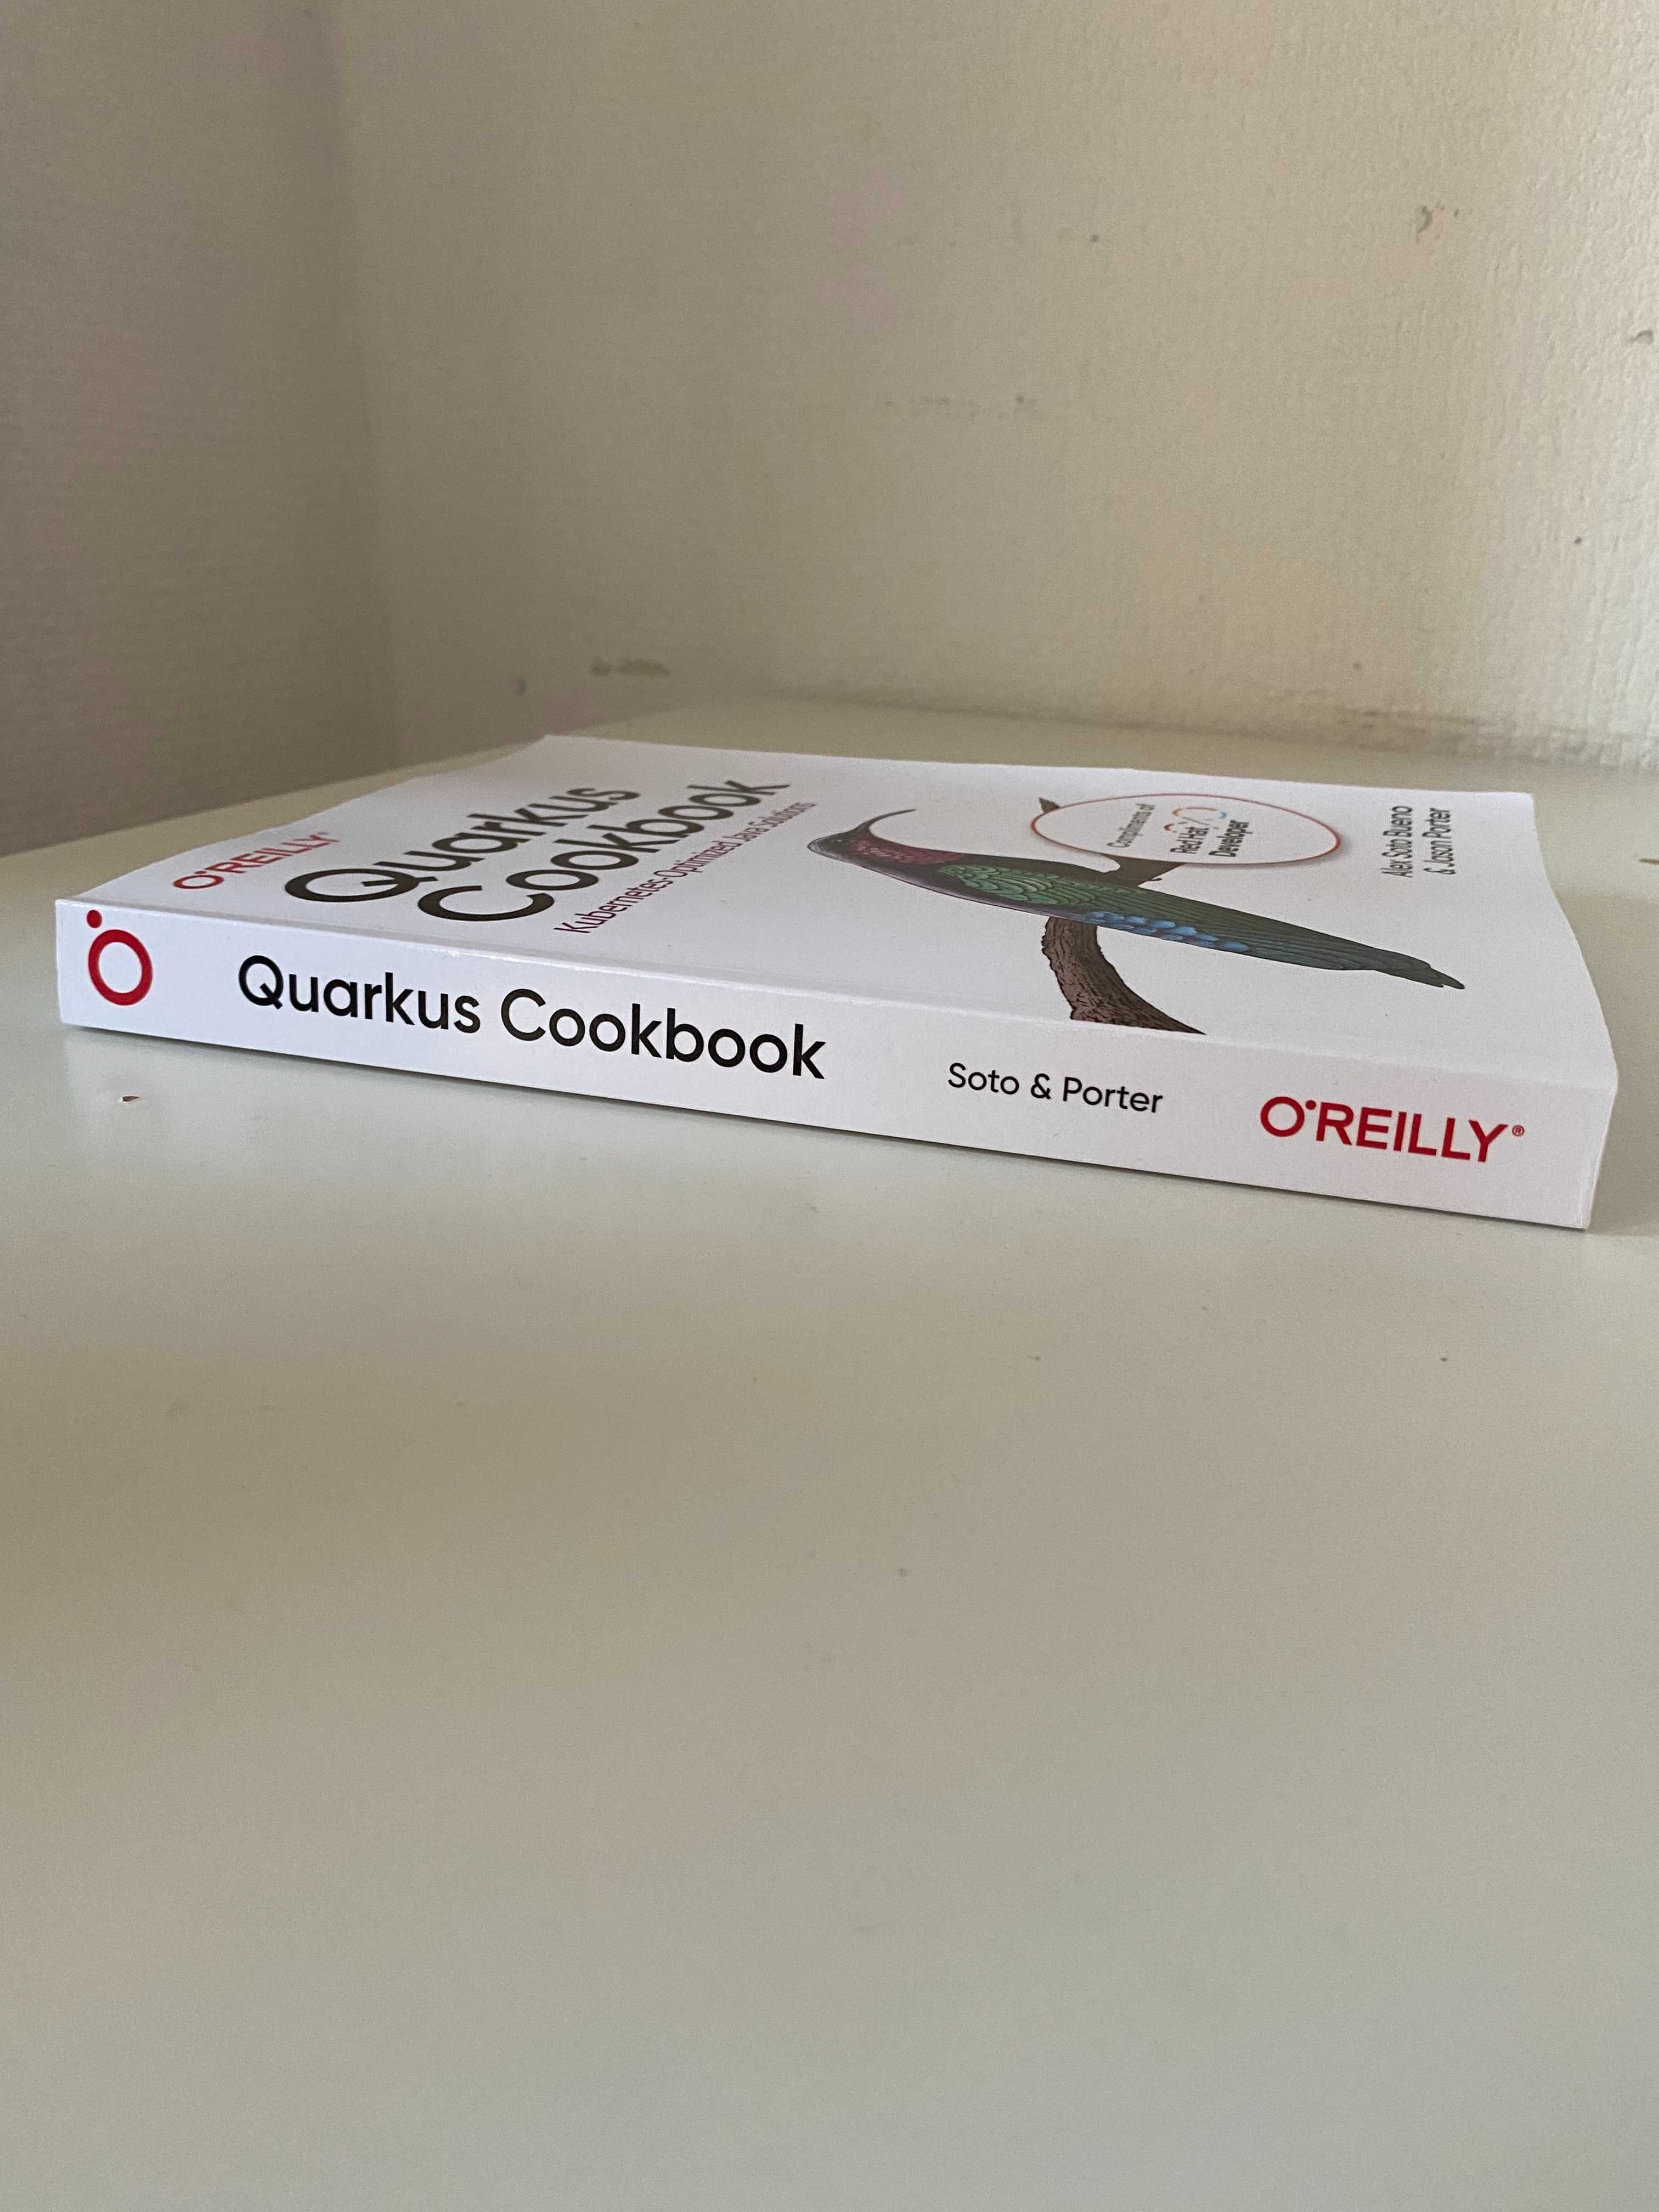 Quarkus Cookbook. Kubernetes-Optimized Java Solutions